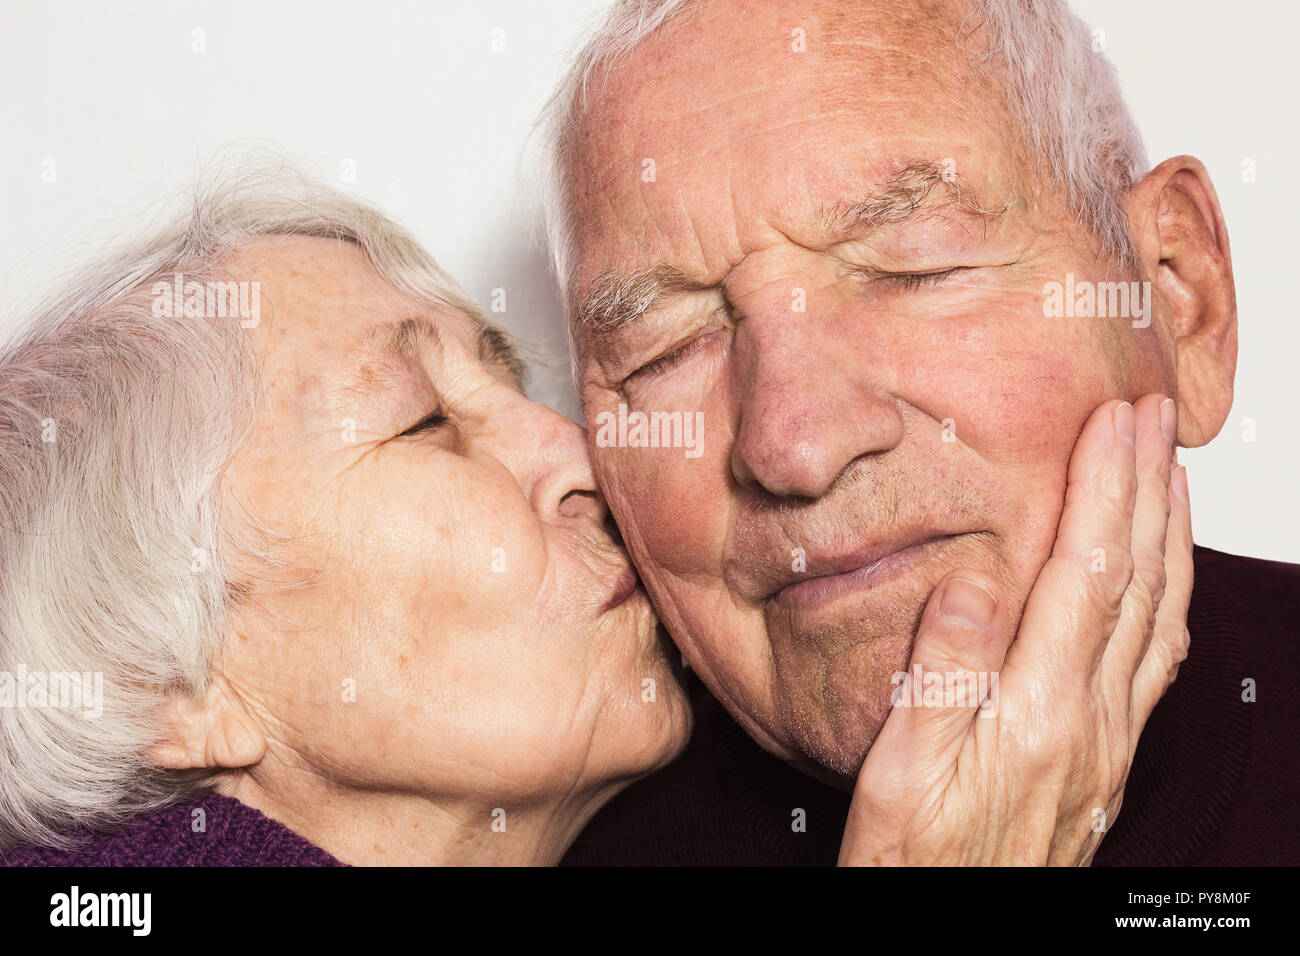 Kissing old men Senior sex: